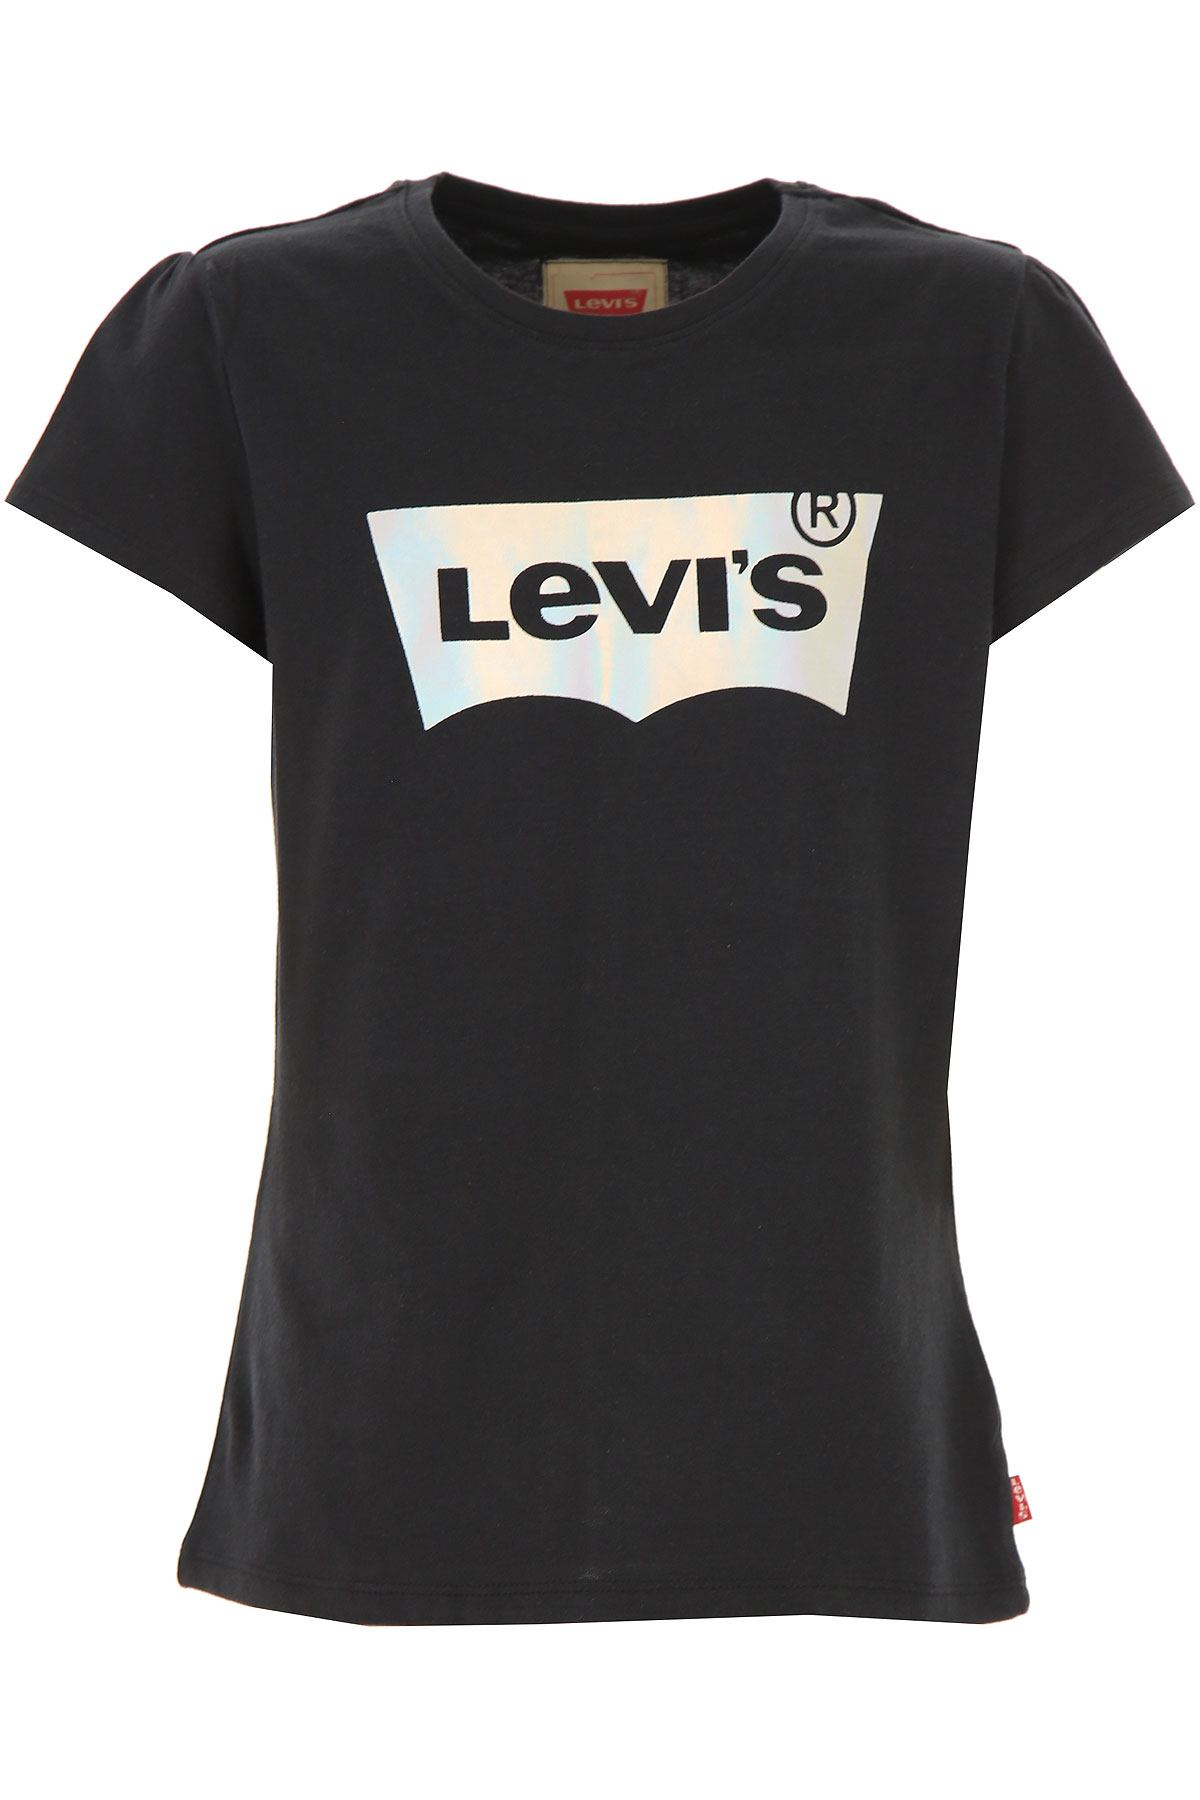 Levis Kinder T-Shirt für Mädchen Günstig im Sale, Schwarz, Baumwolle, 2017, 10Y 16Y 8Y